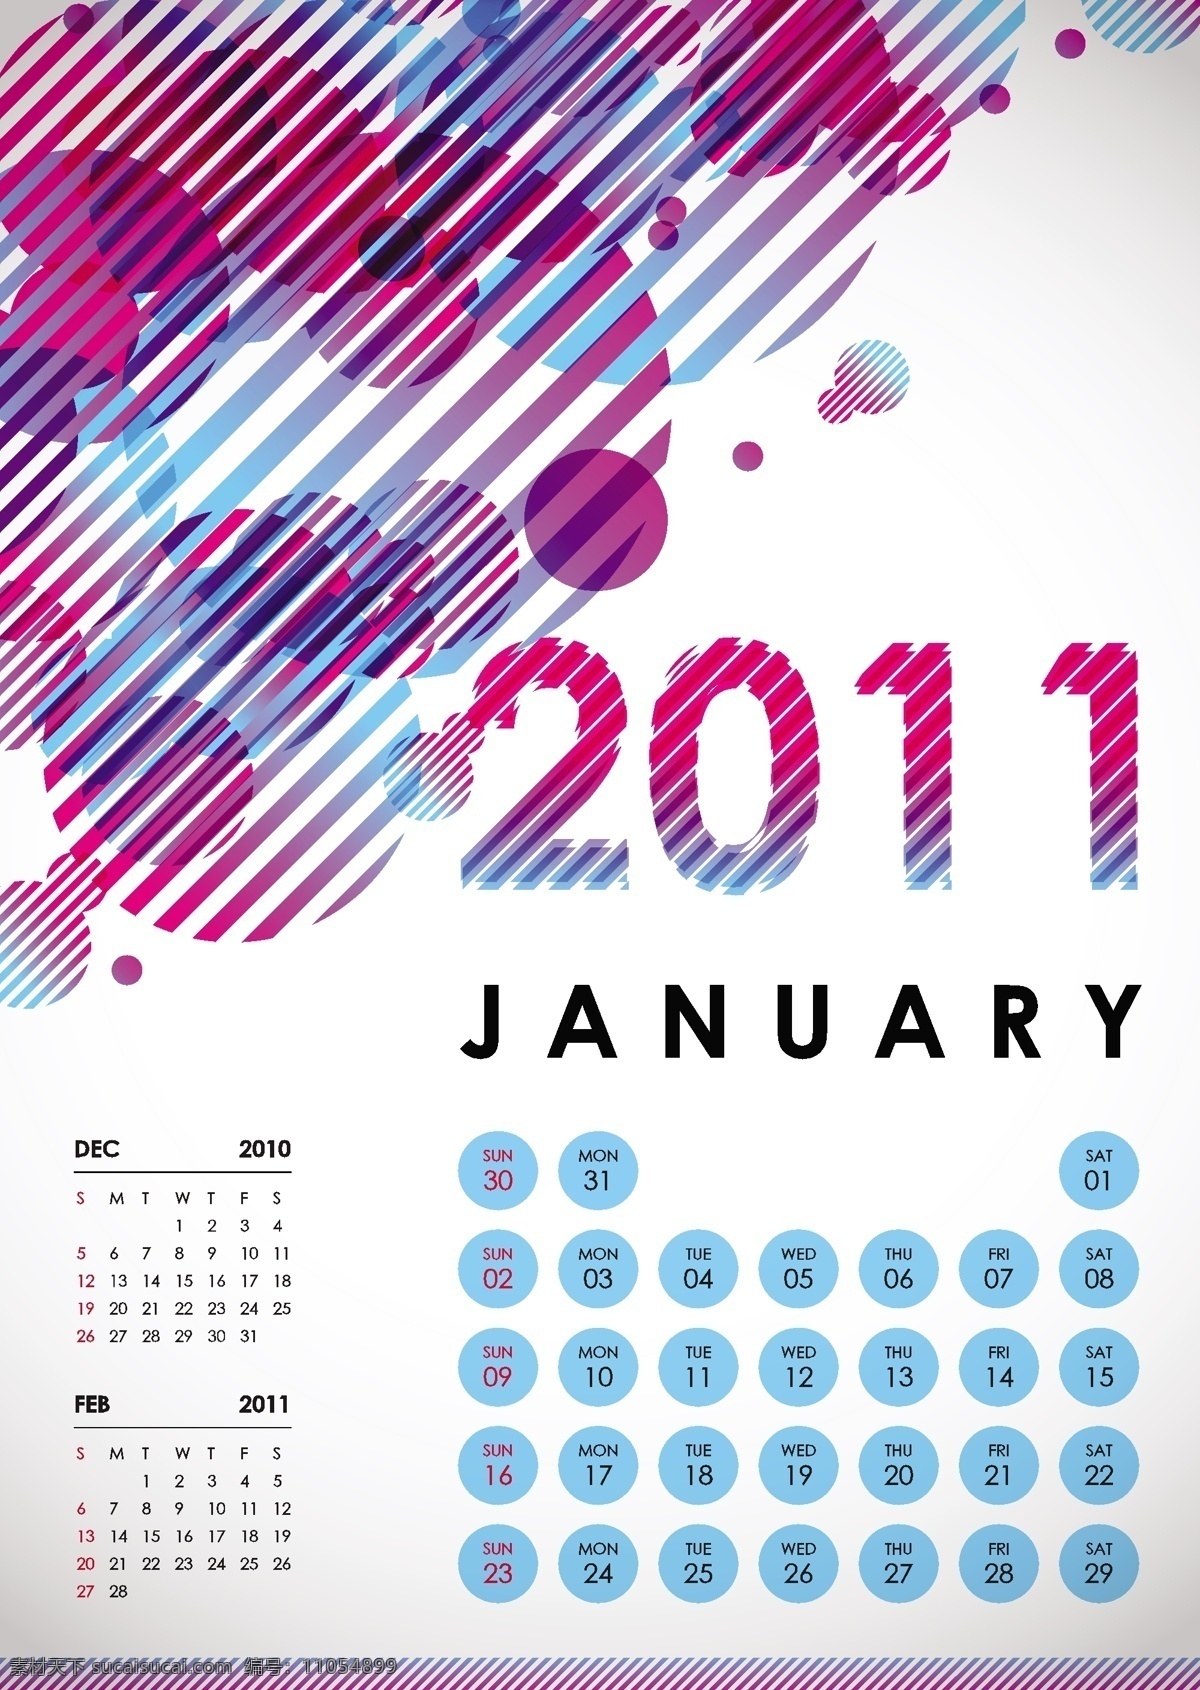 2011 一月 日历 矢量图 其他矢量图